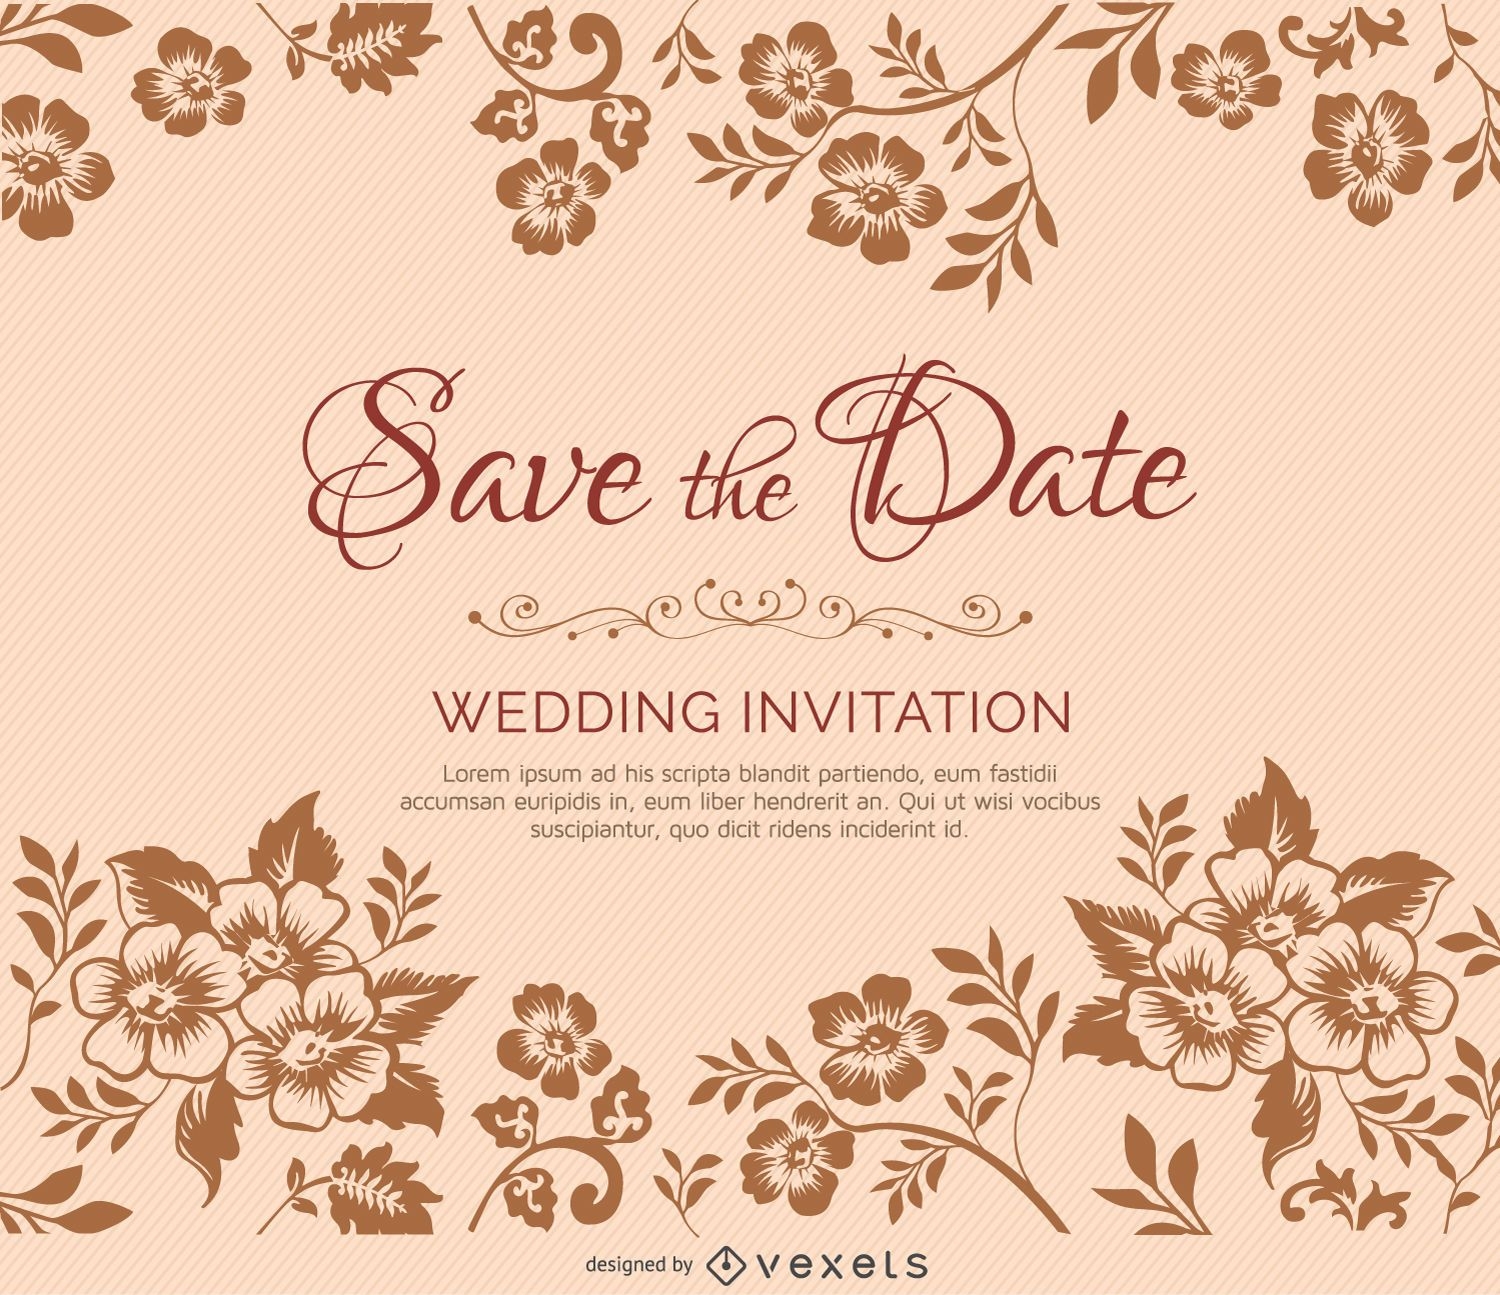 Convite de casamento de ramos de flores